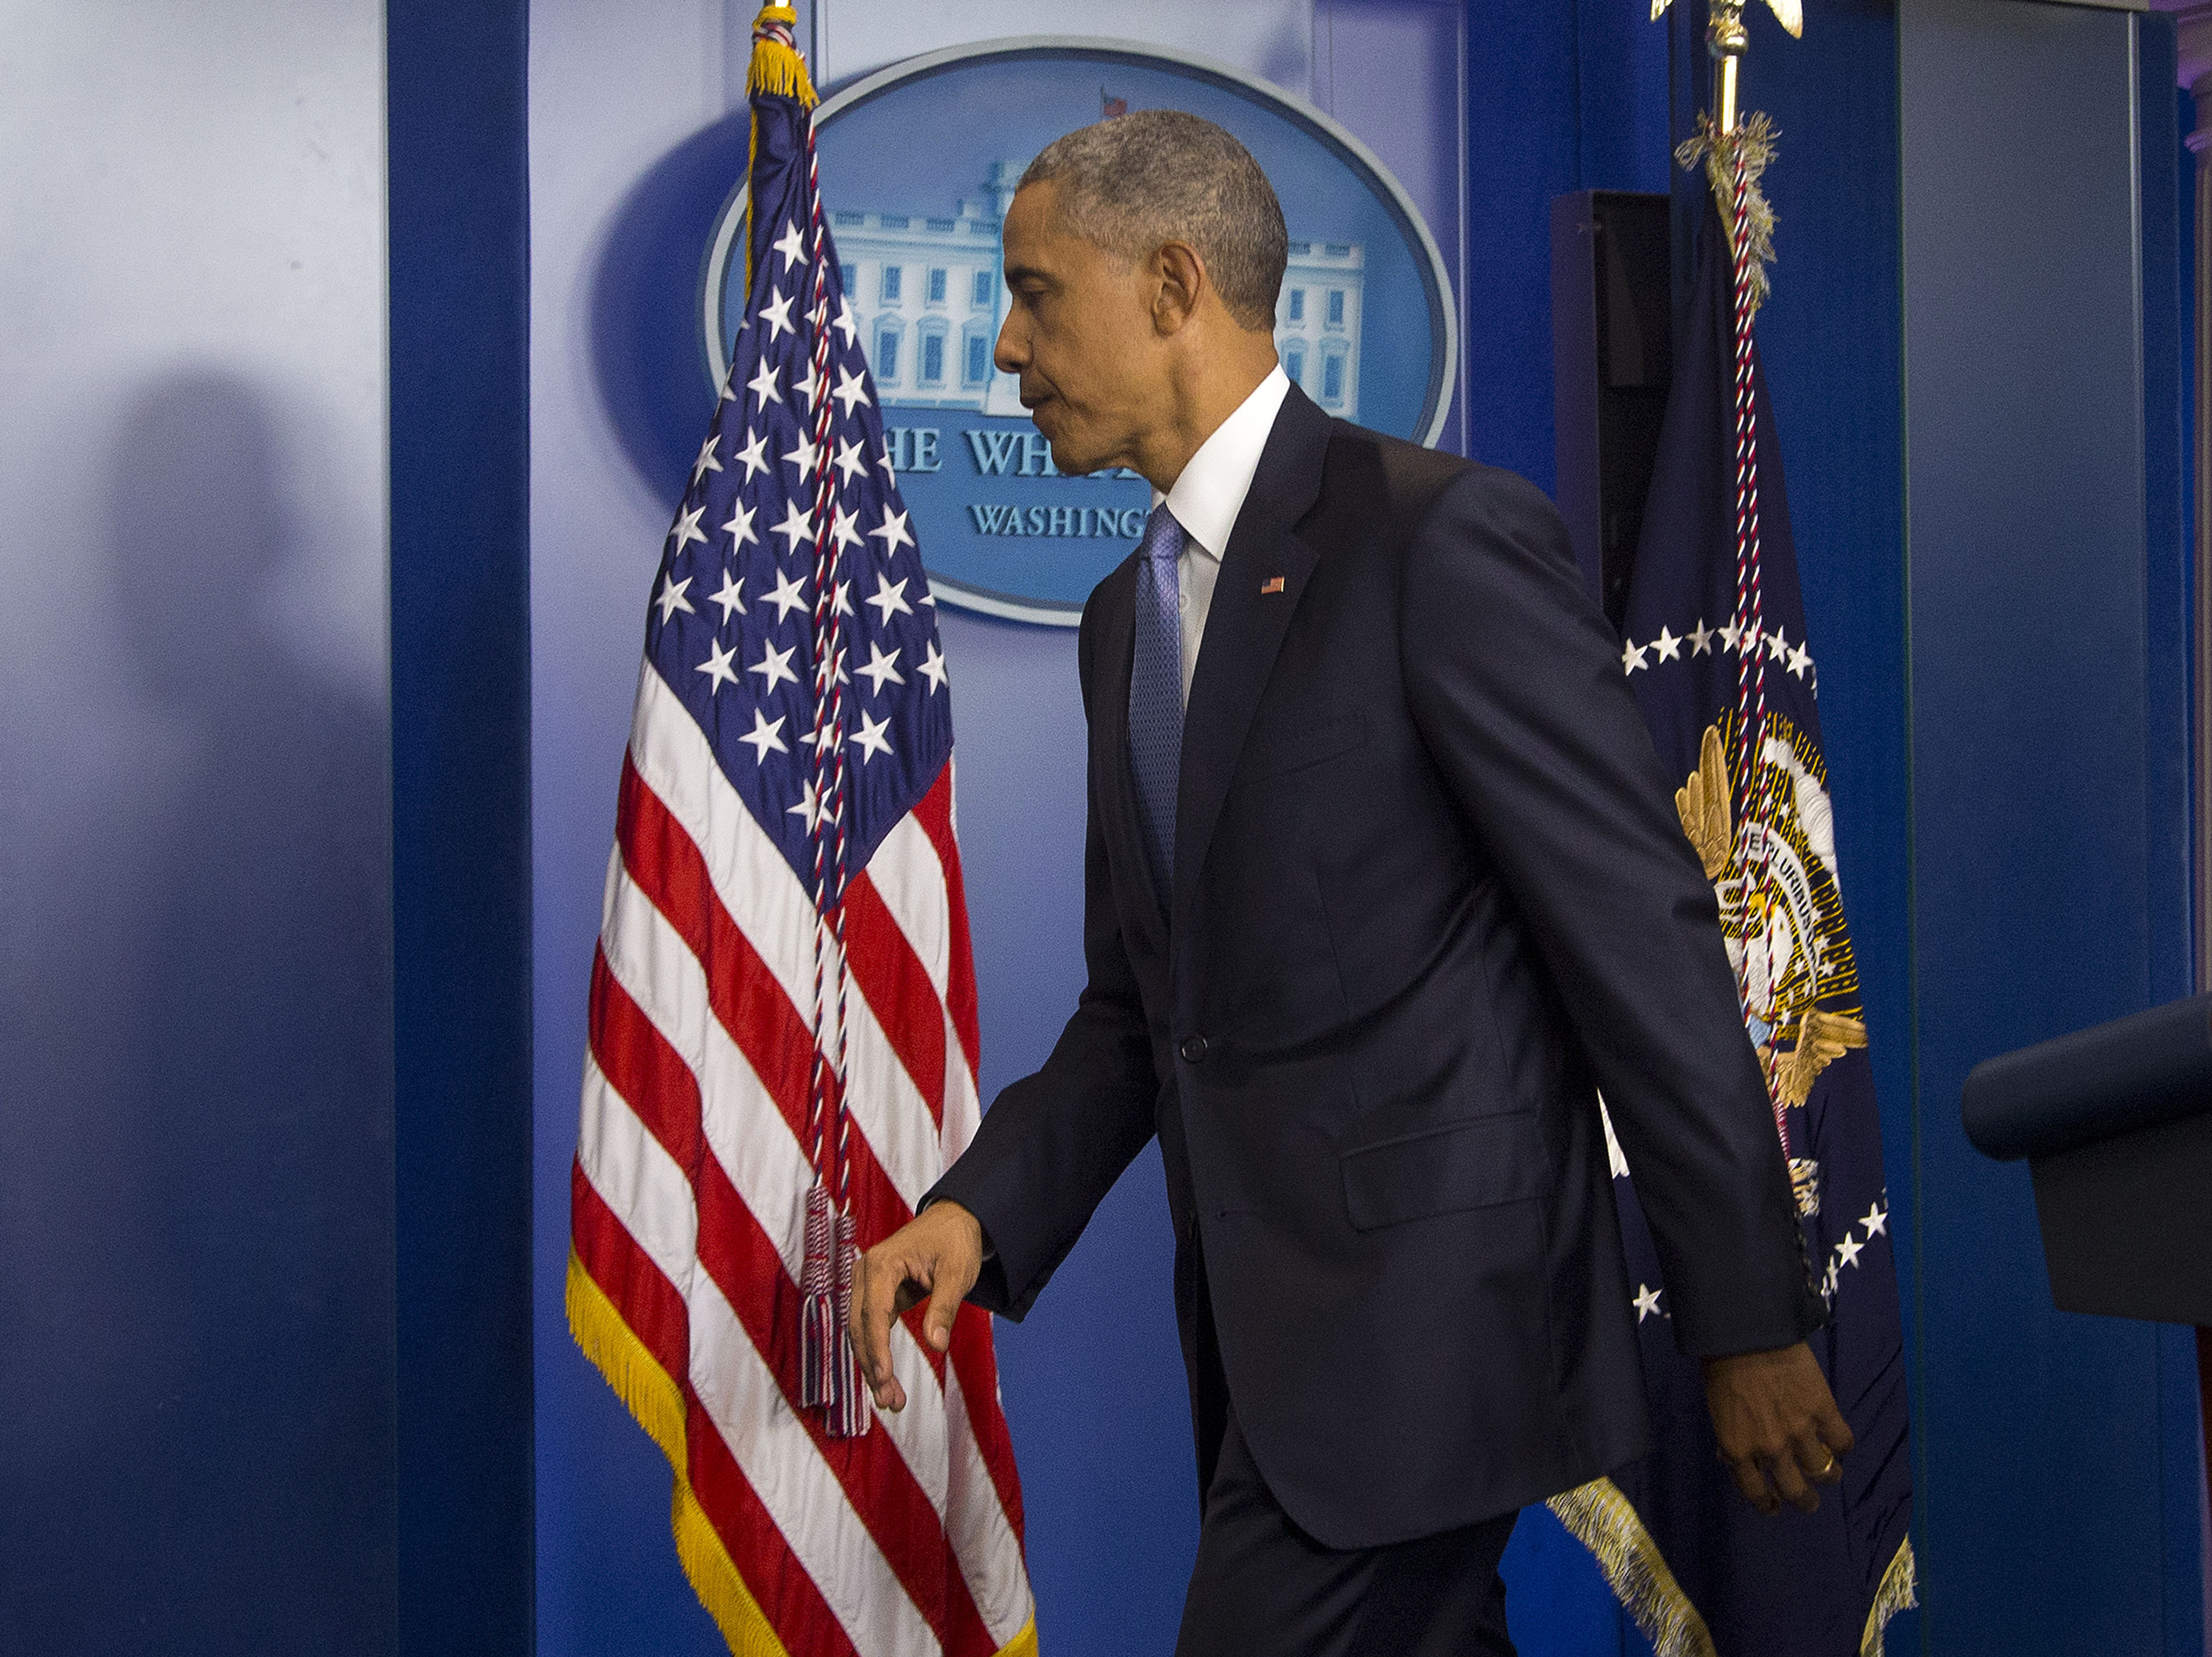 Ομπάμα-G7: Οι Έλληνες πρέπει να λάβουν σοβαρές πολιτικές αποφάσεις και να κάνουν μεταρρυθμίσεις